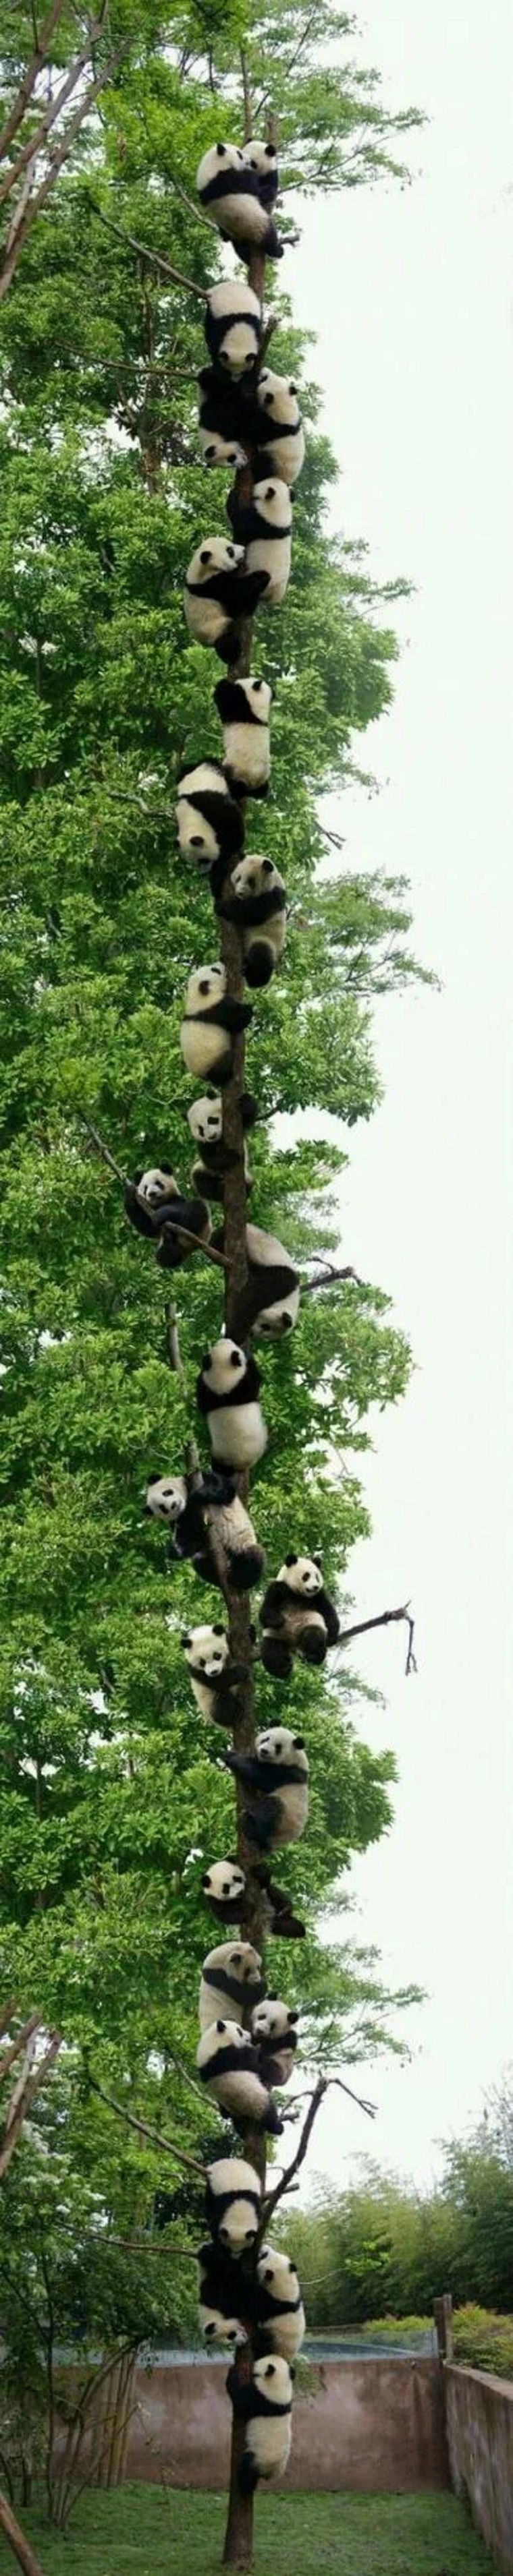 Pandy zjavne maj tento strom radi